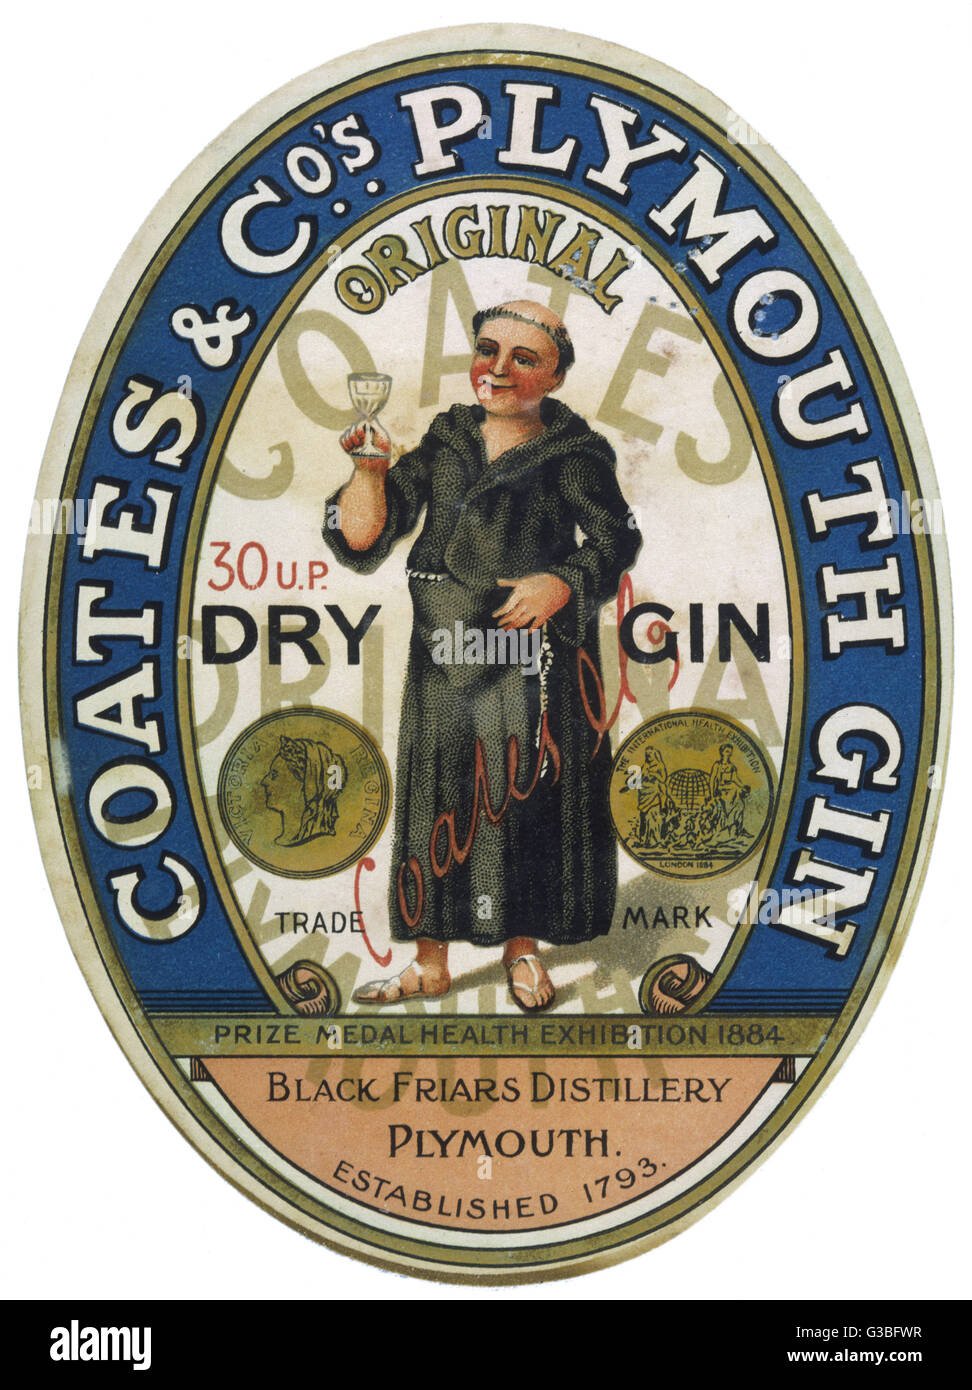 Eine Bezeichnung für Coates Plymouth Gin.        Datum: 19. Jahrhundert Stockfoto